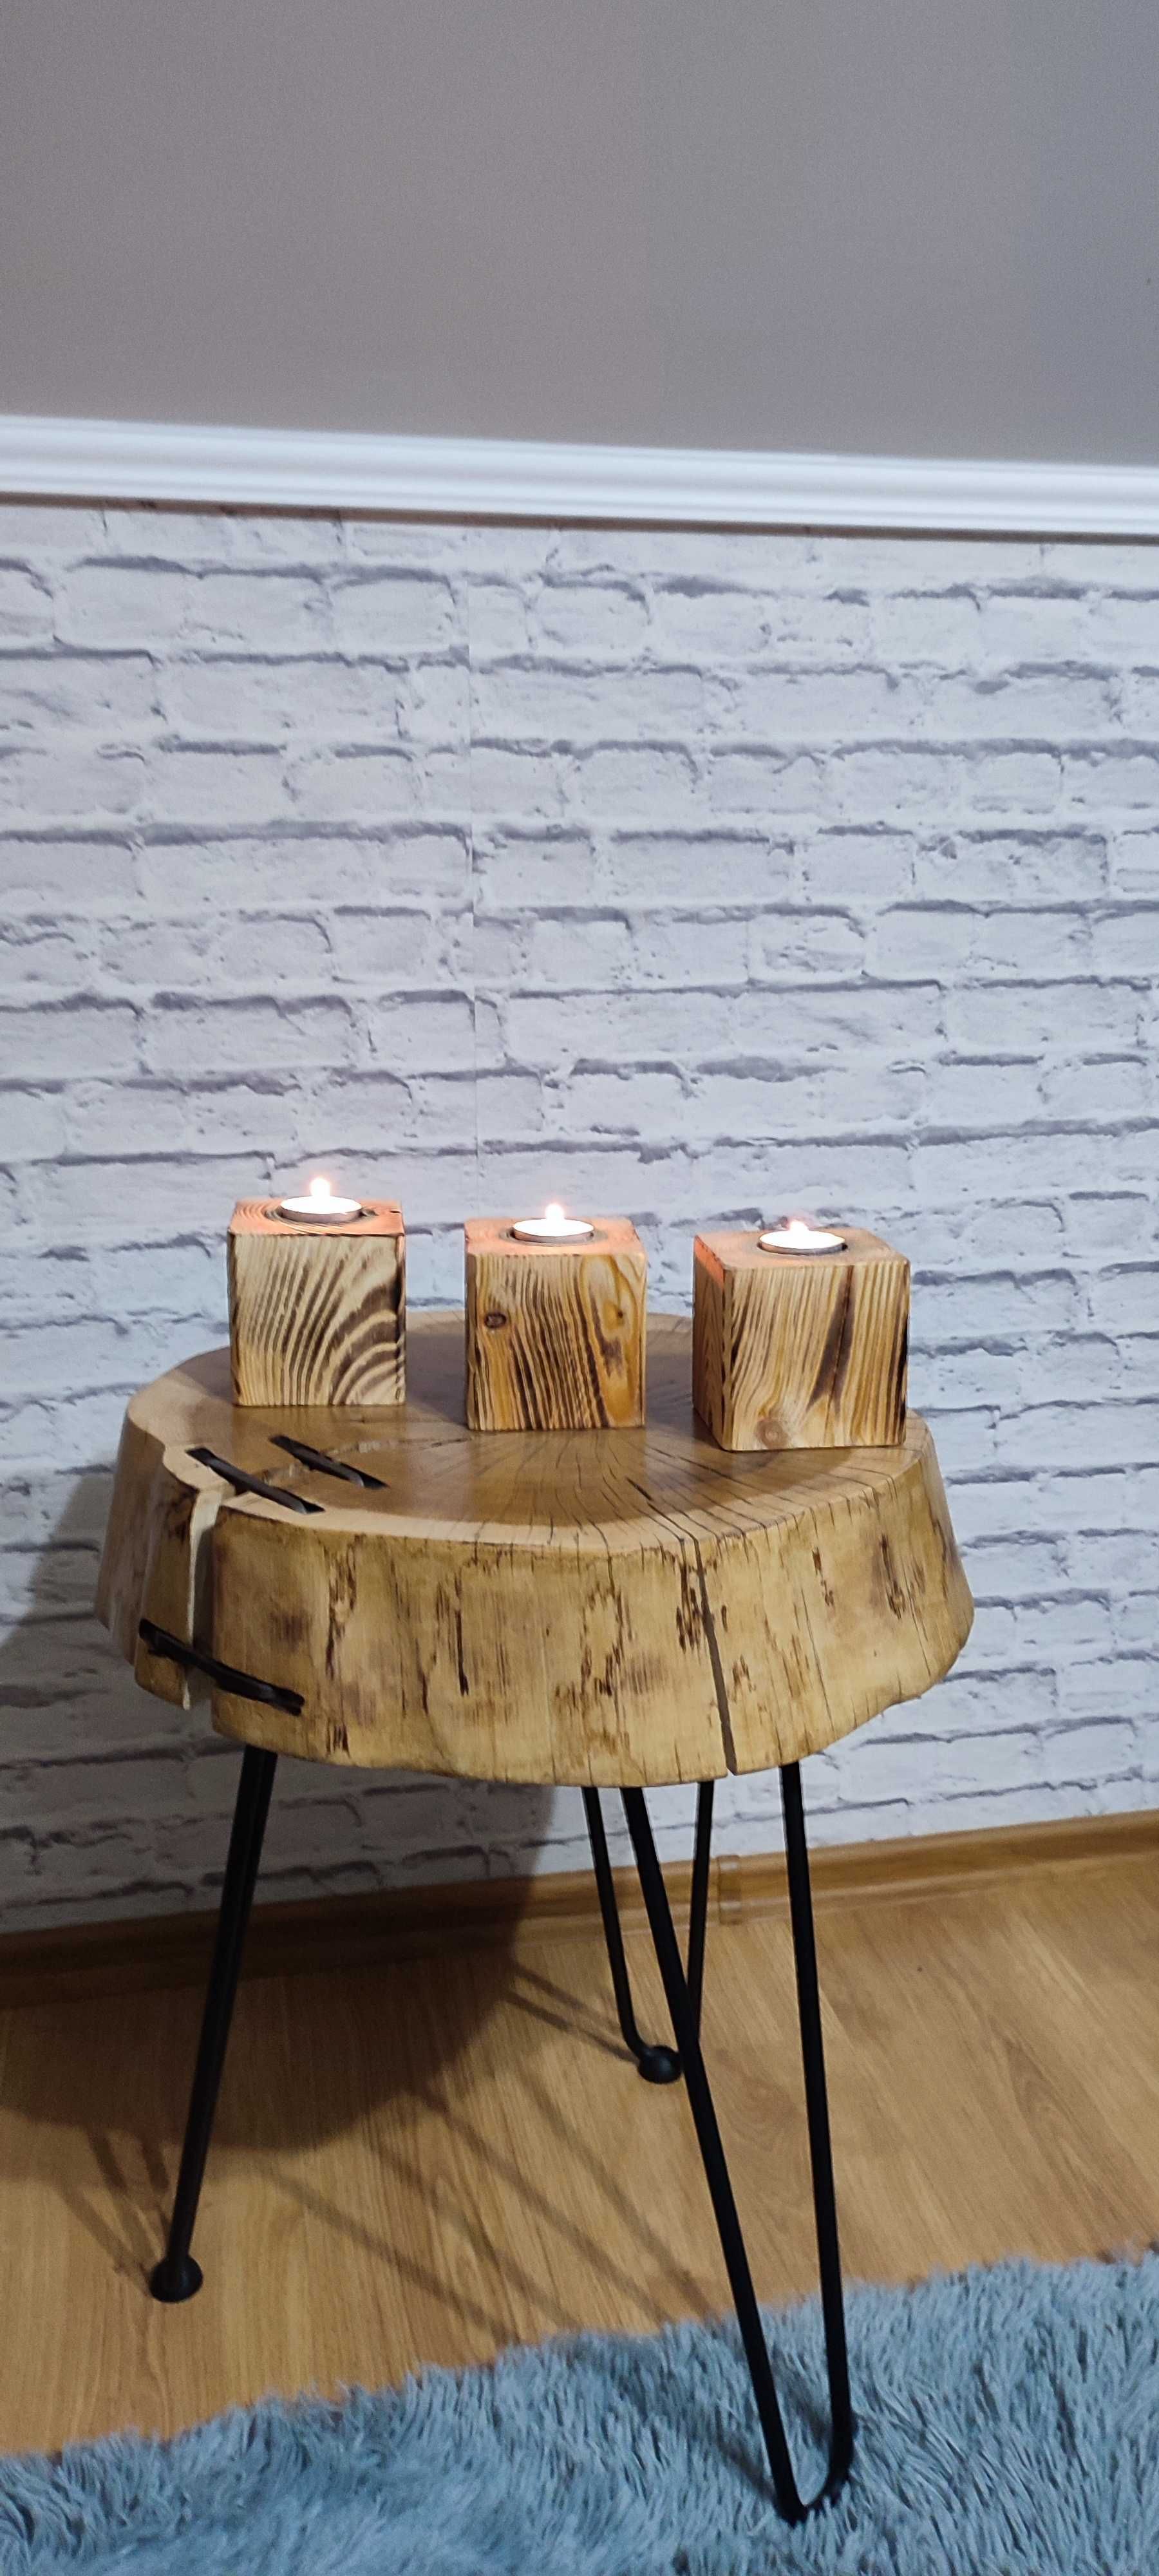 Świeczniki drewniane kwadratowe komplet 3 sztuki